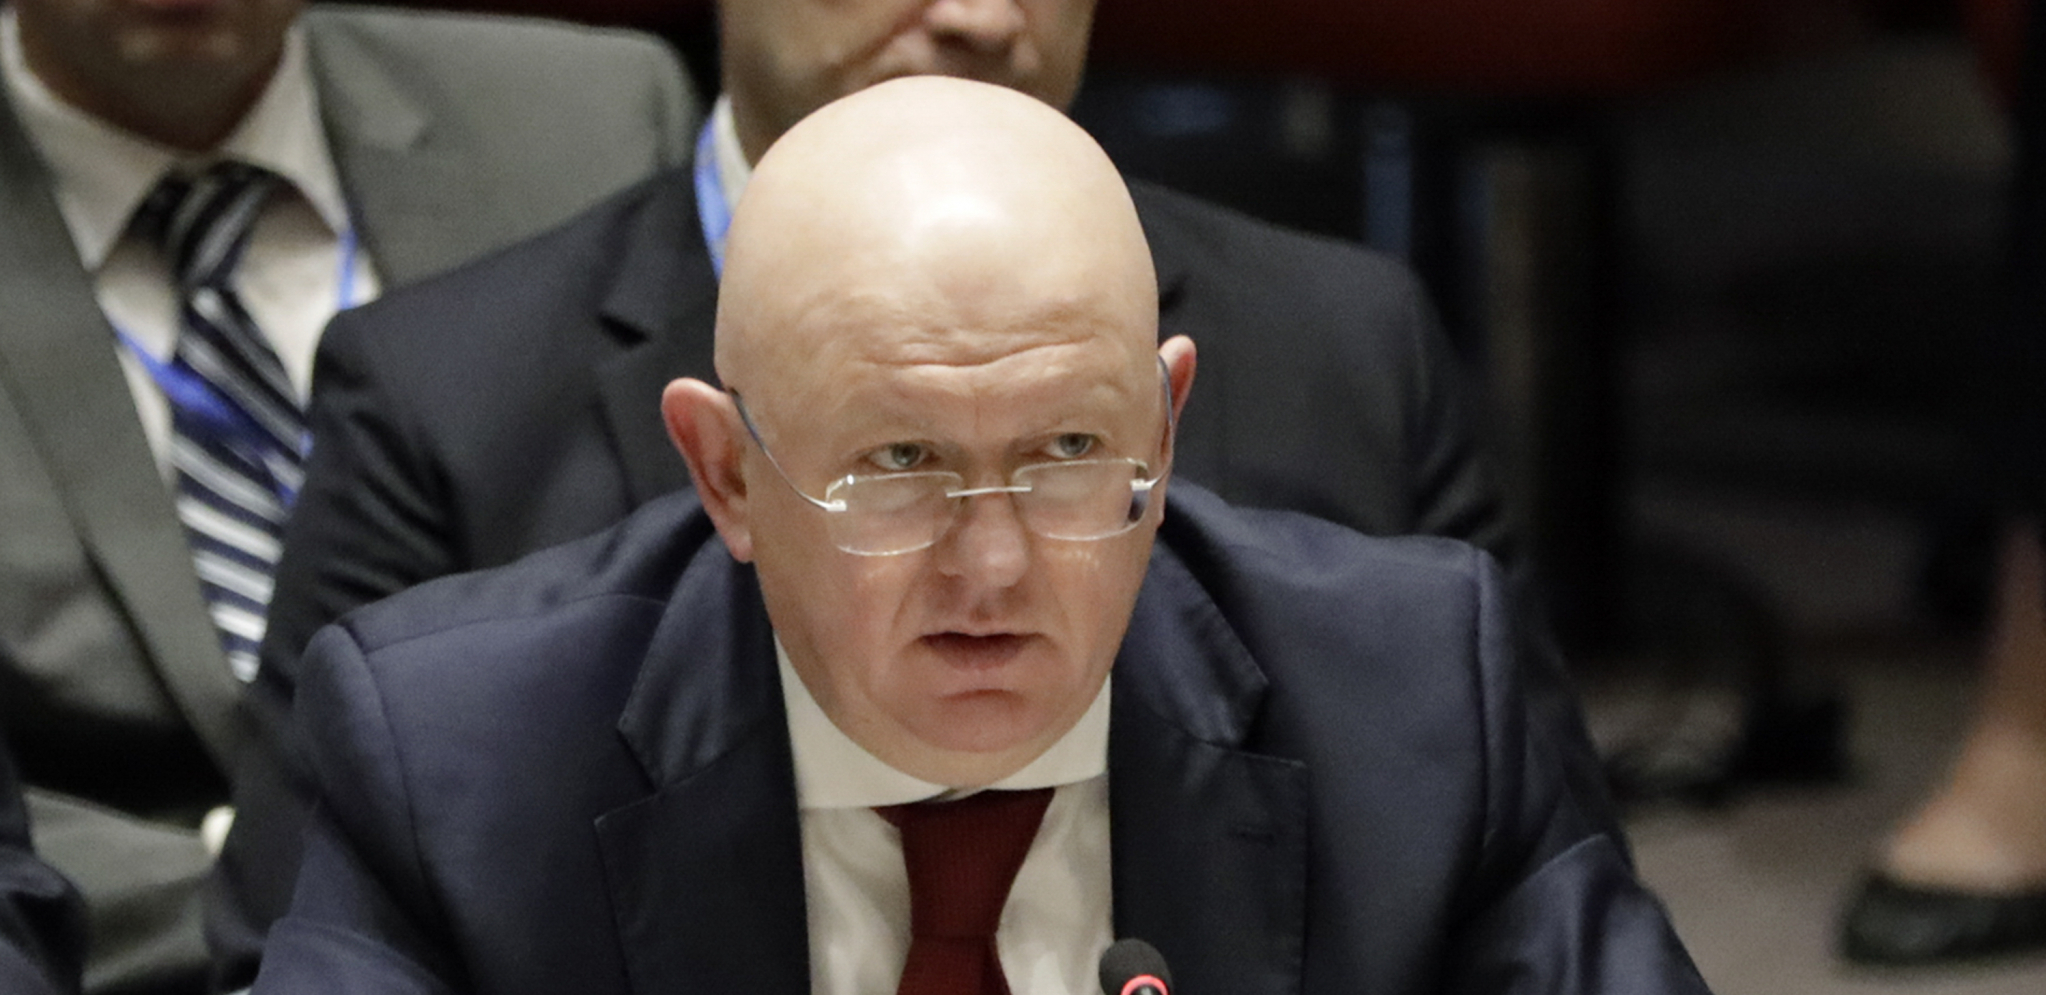 NEBENZJA I POLJANSKI DEMONSTRIRALI STAV MOSKVE Ruski ambasador u UN i njegov zamenik napustili sednicu Generalne skupštine